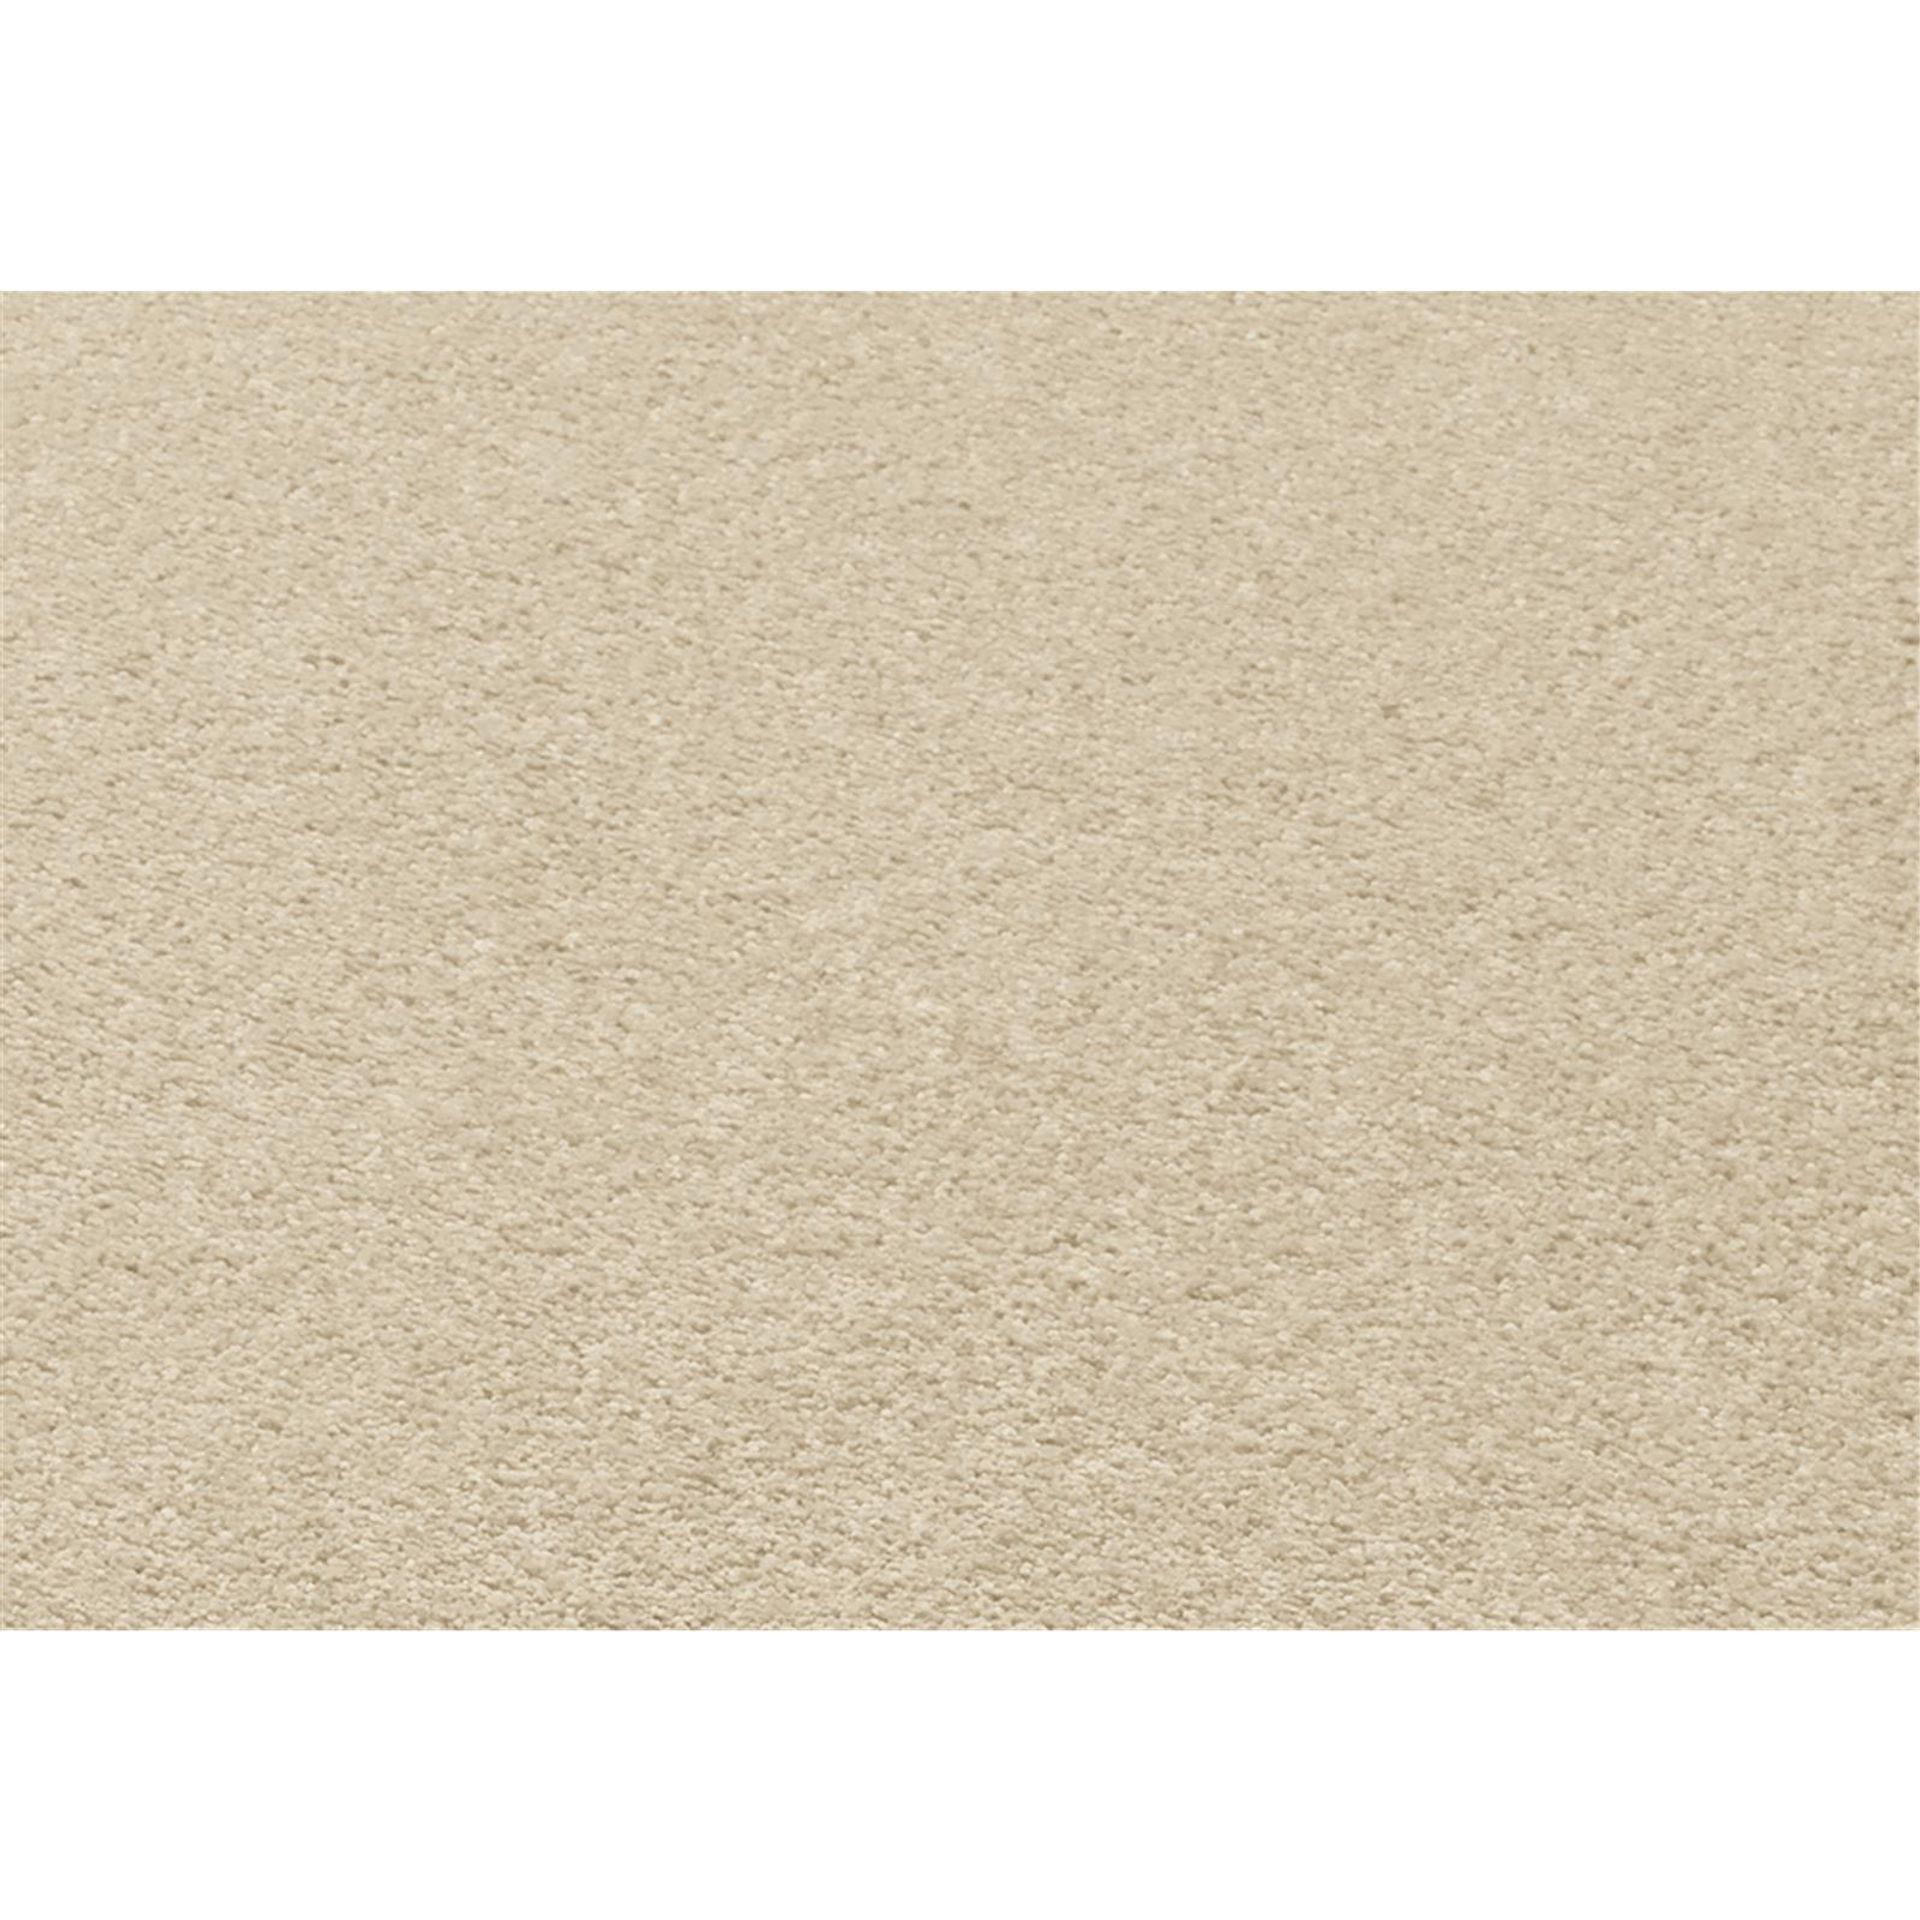 Teppichboden Vorwerk Passion 1055 CONZANO WOLKE Velours Weiß 6C56 - Rollenbreite 500 cm